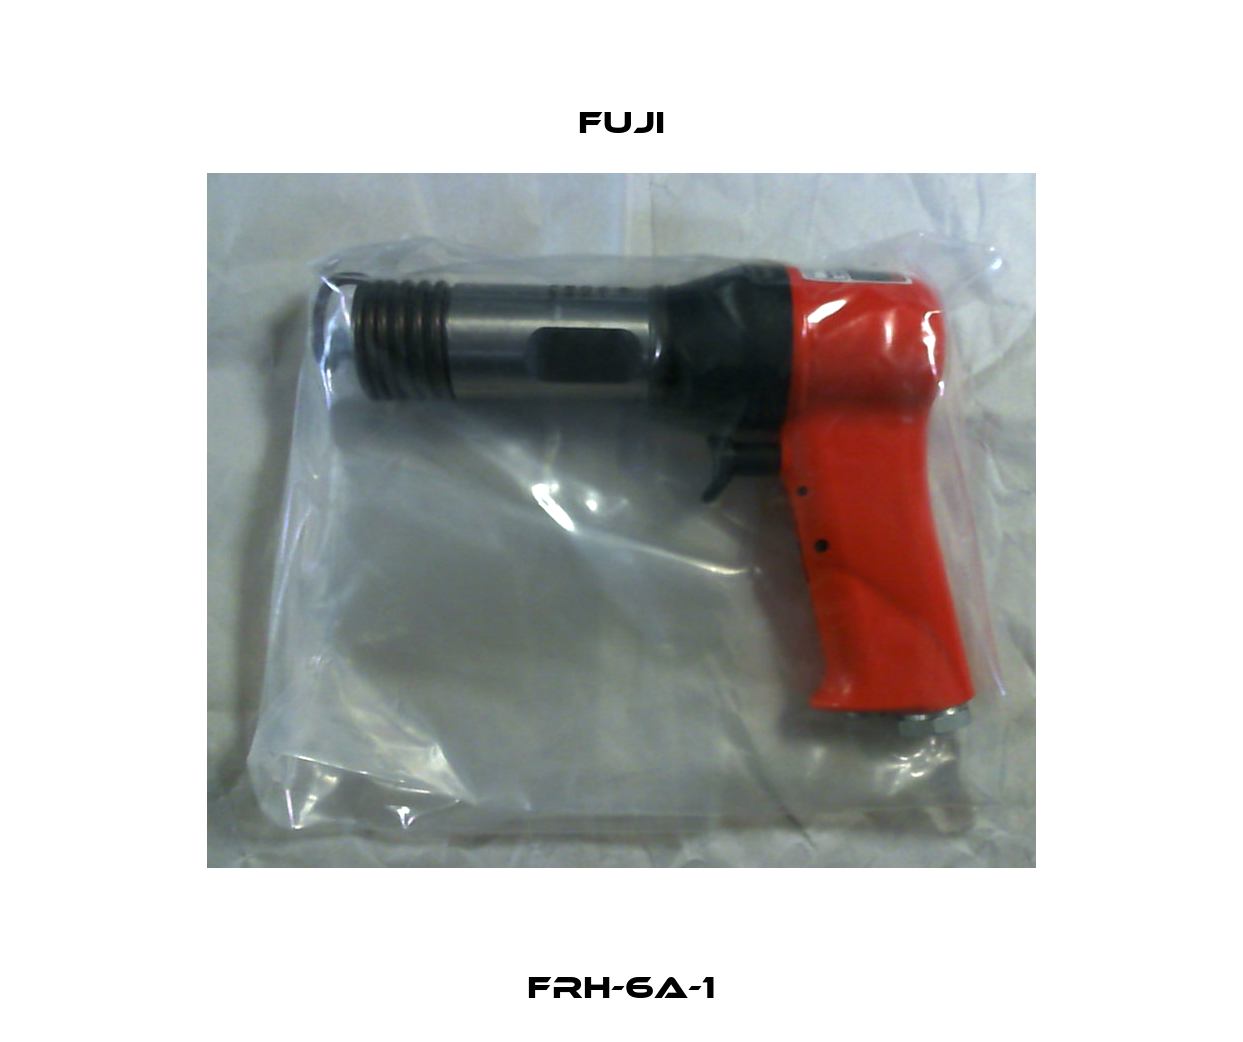 FRH-6A-1 Fuji